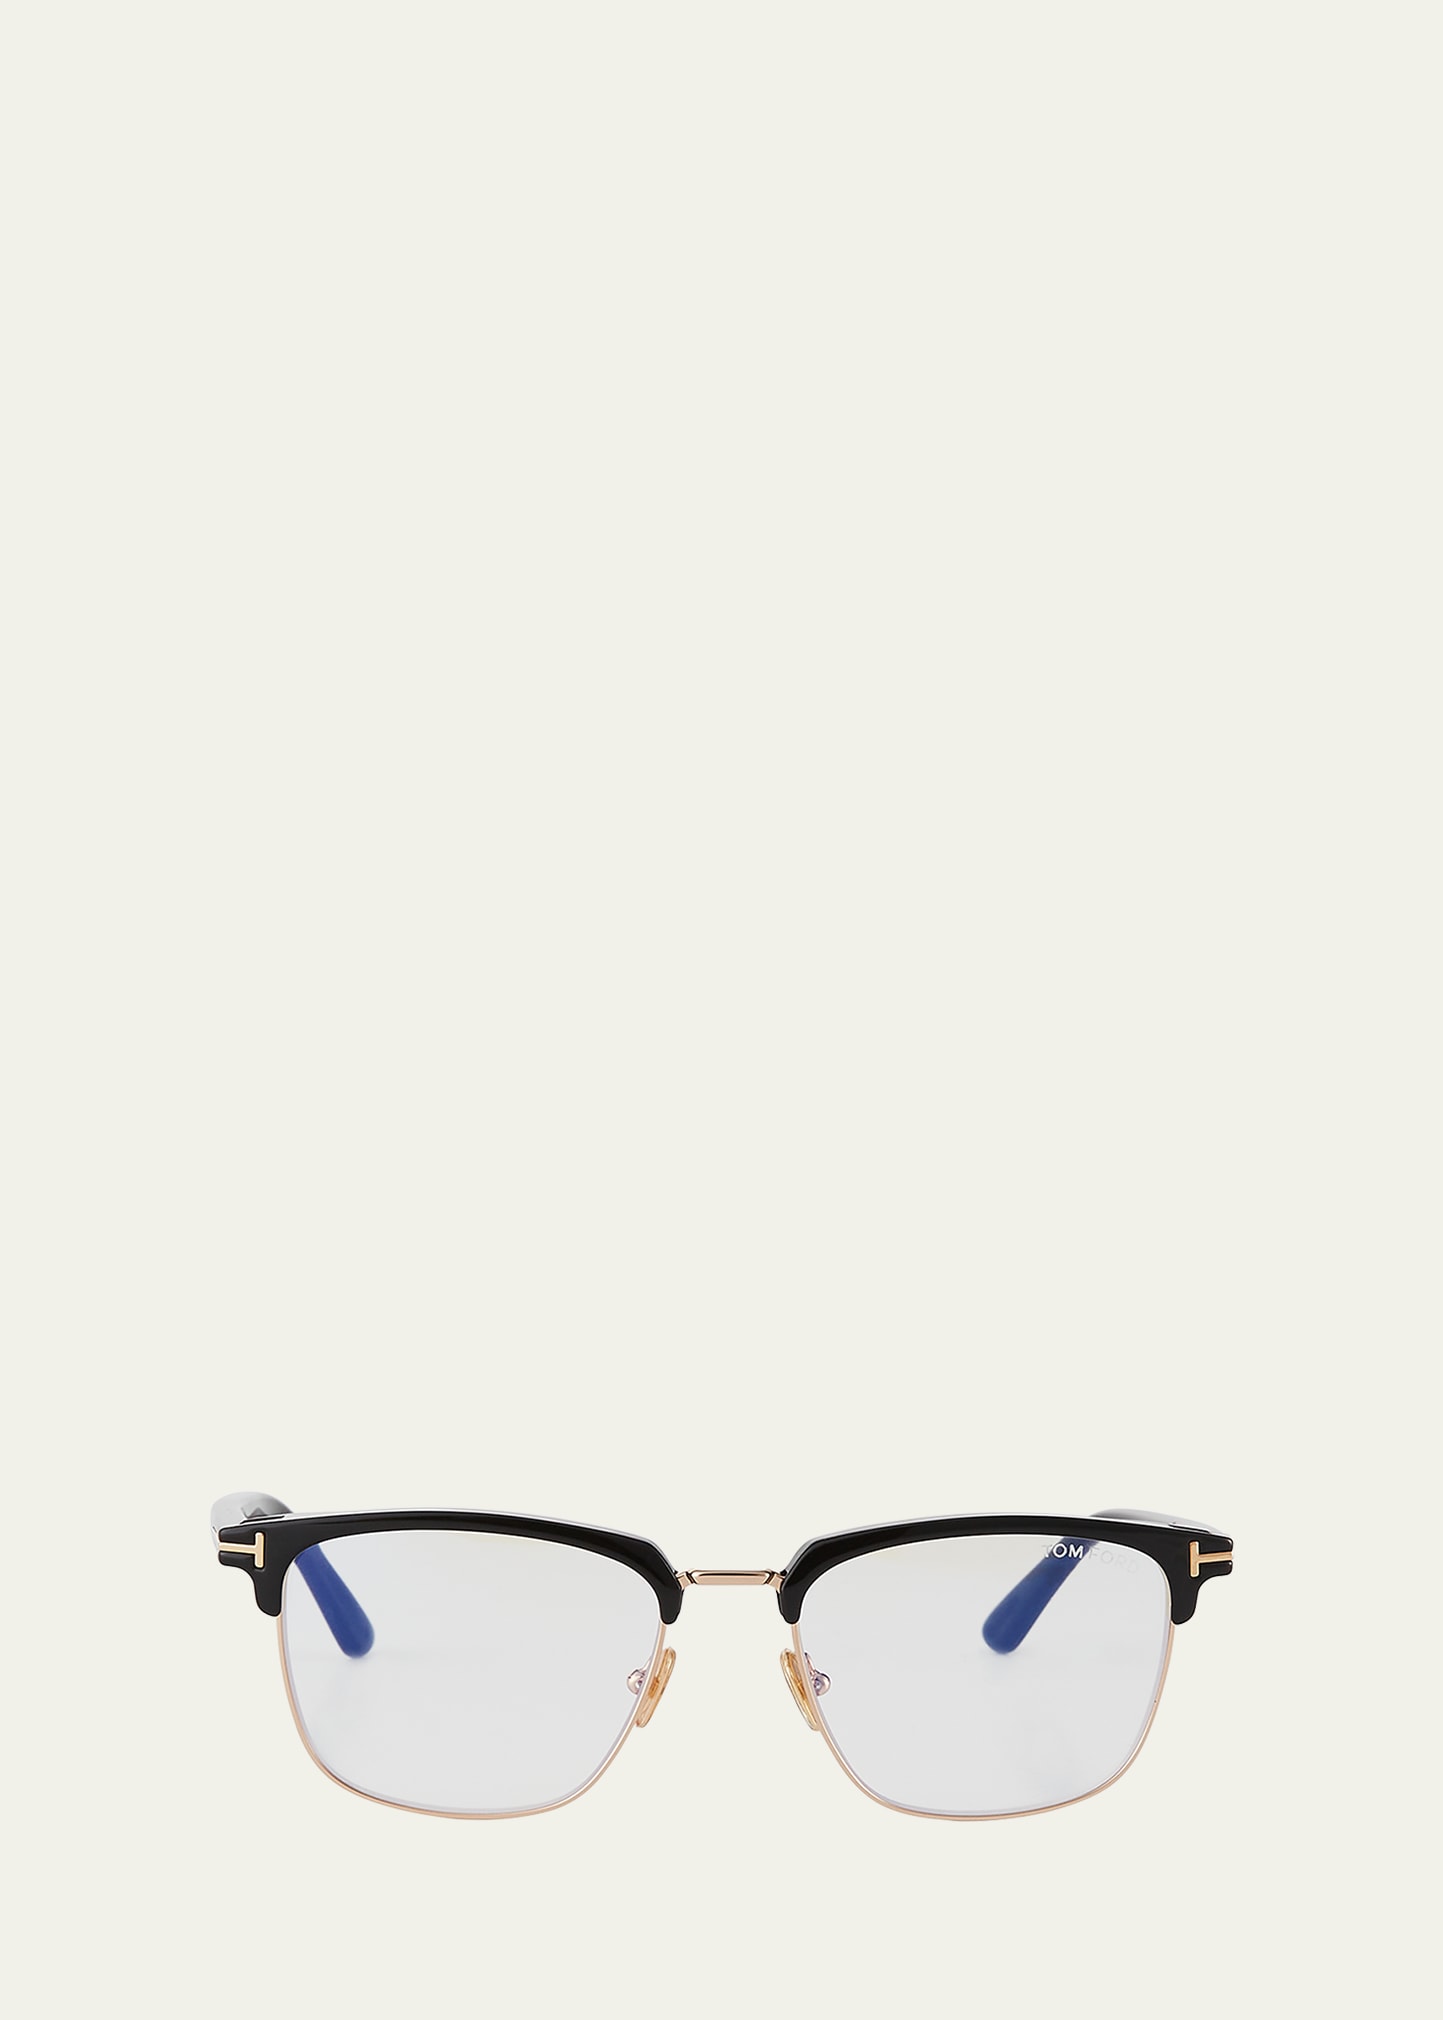 Tom Ford Men's Ft5683-bm54 Blue Light Blocking Optical Glasses In Black